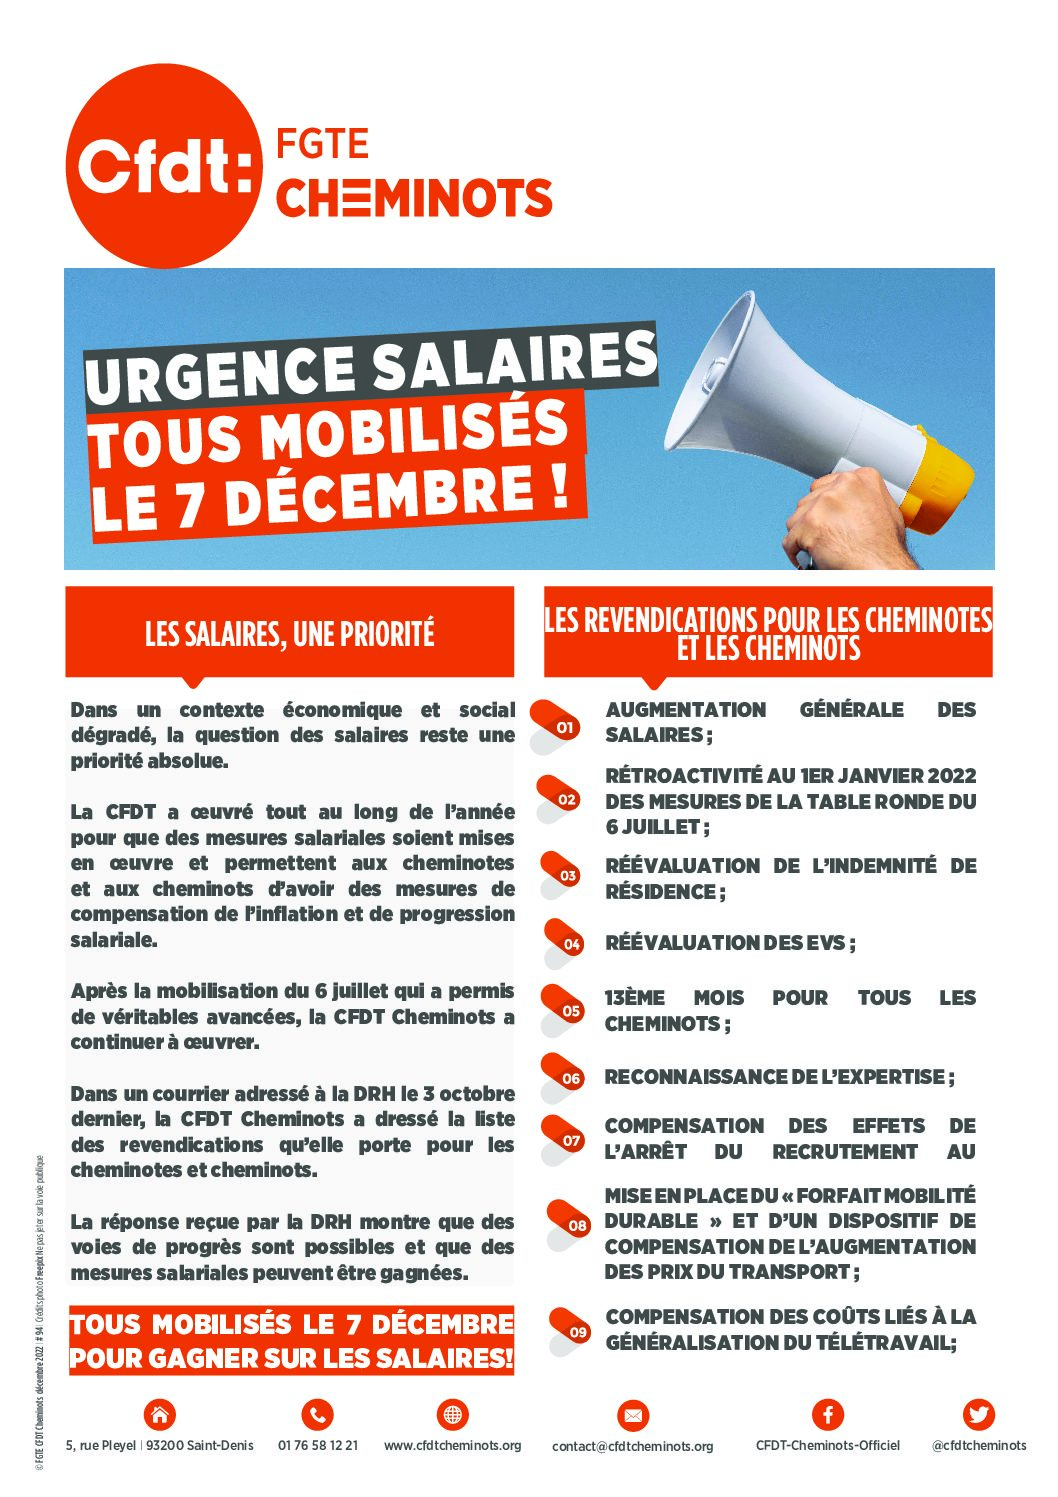 Urgence salaires: tous mobilisés le 7 décembre